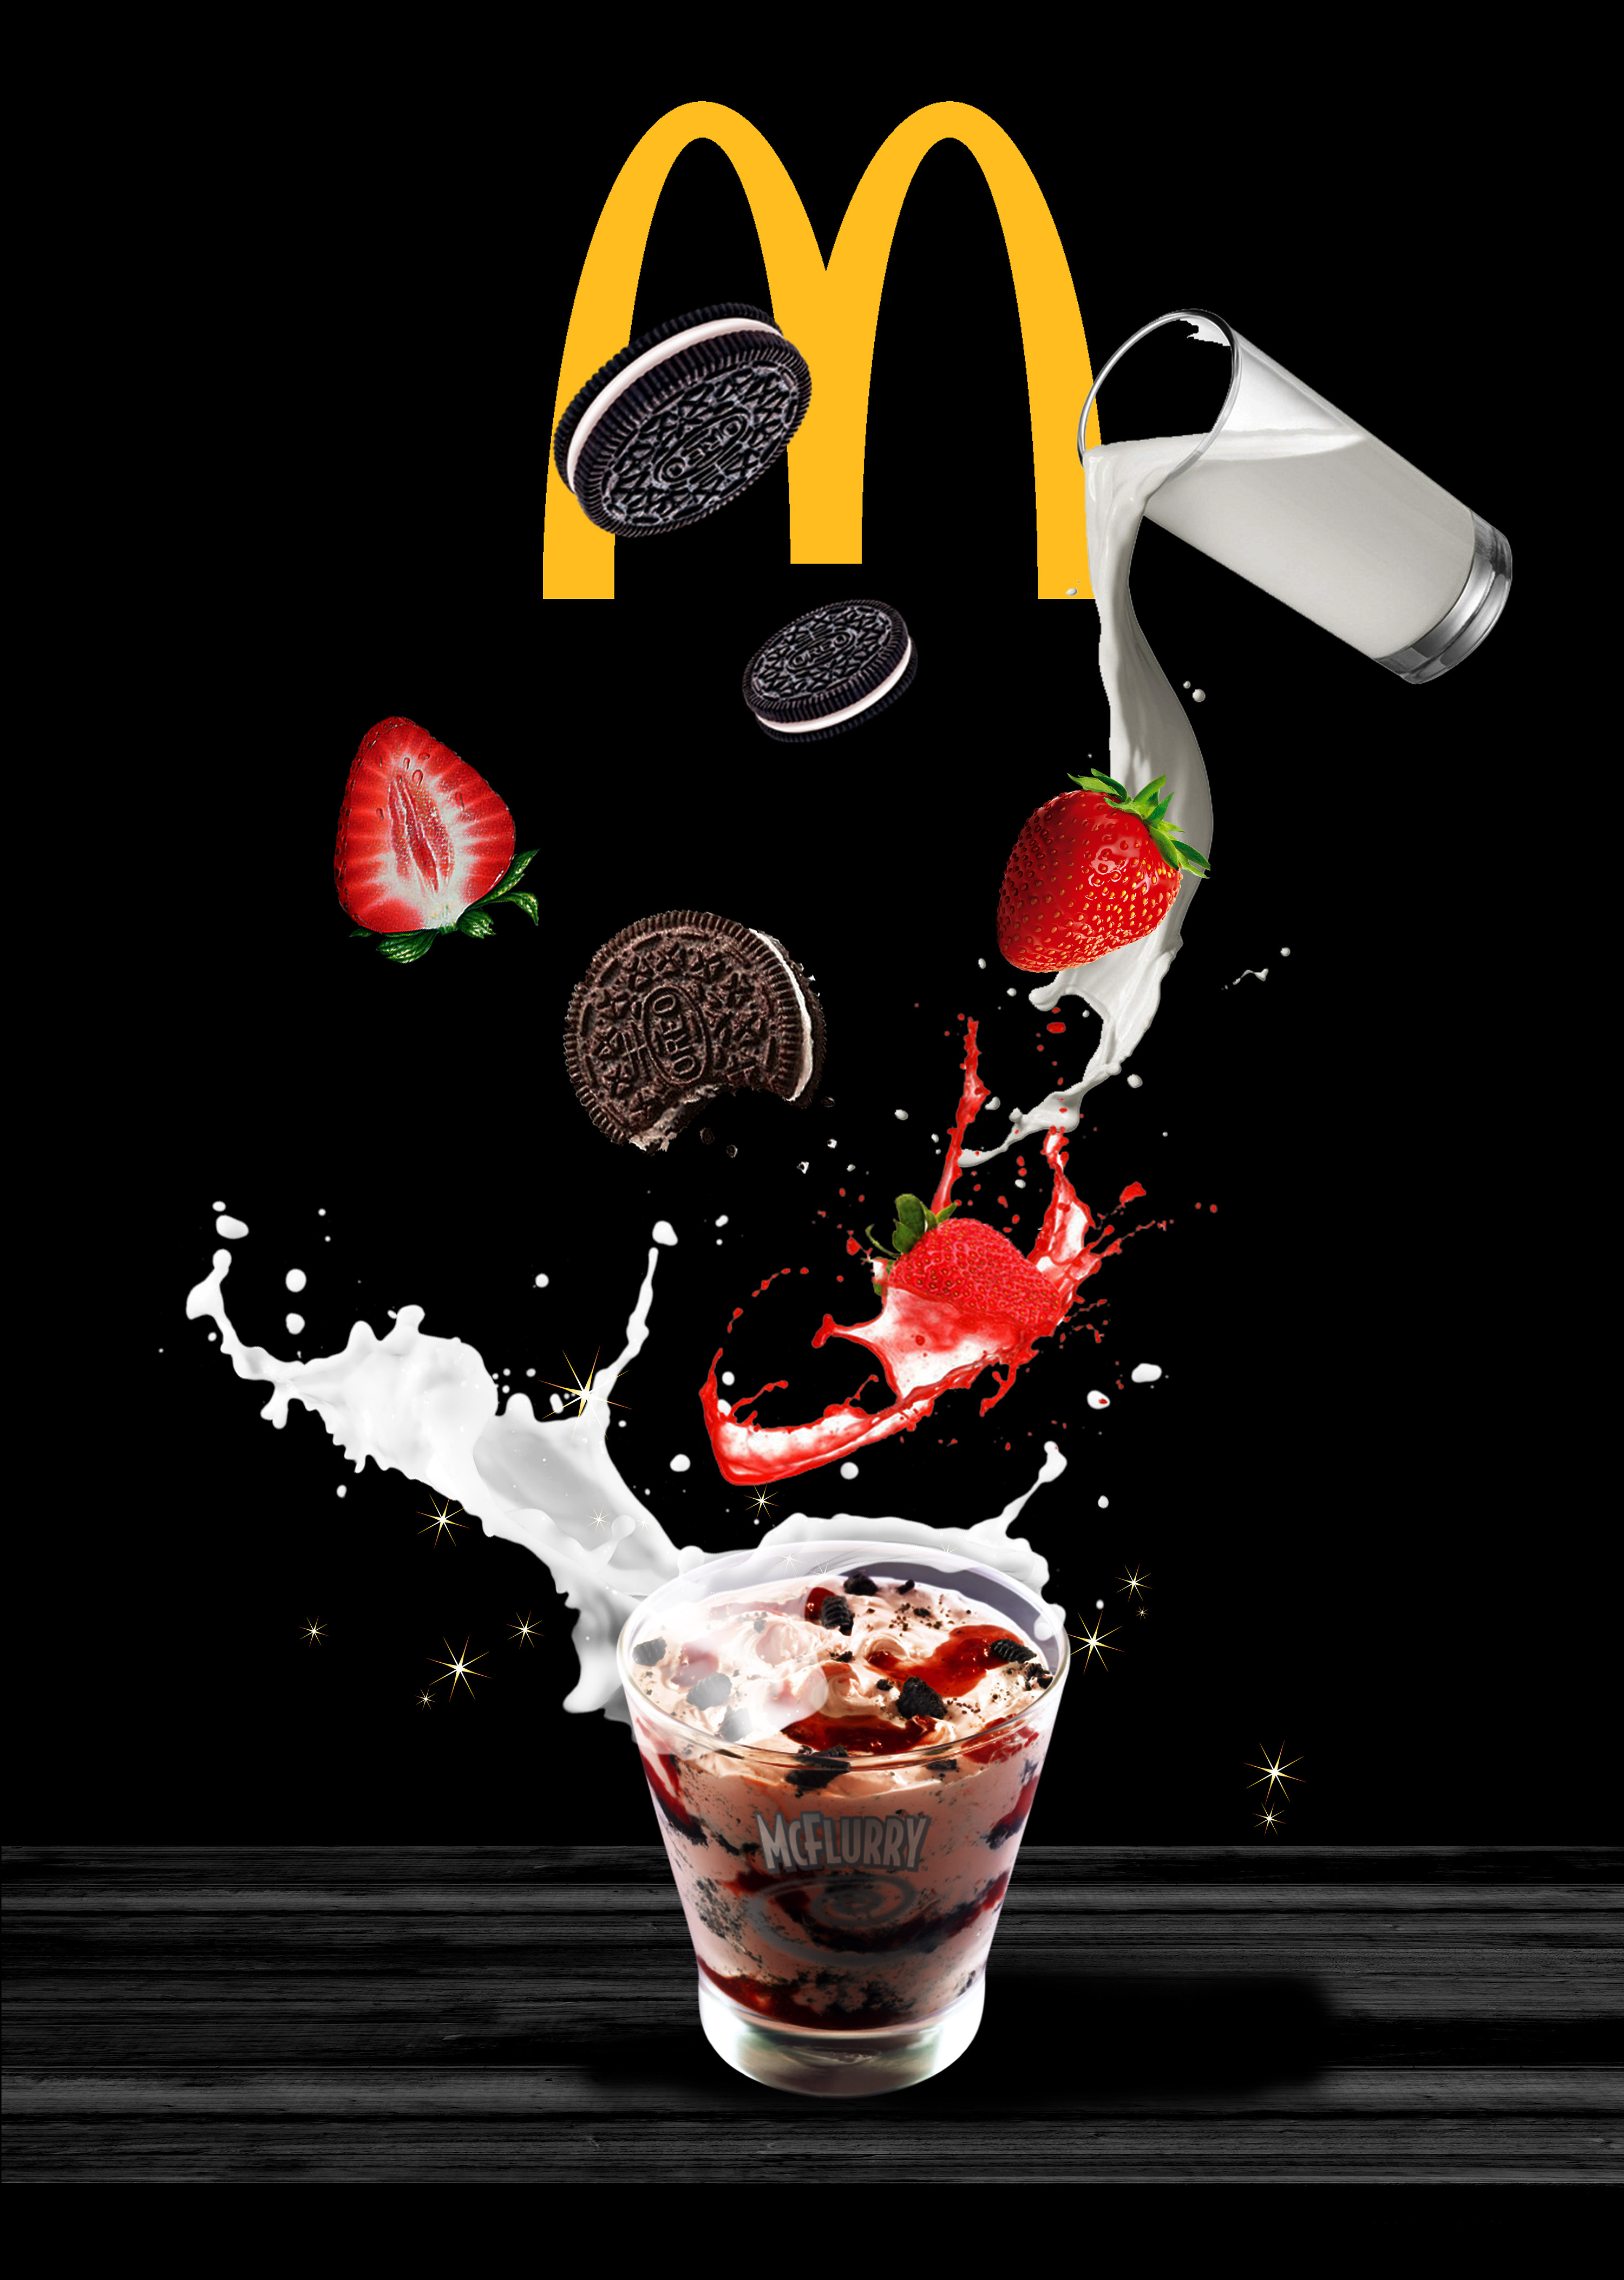 麦当劳创意图片海报图片